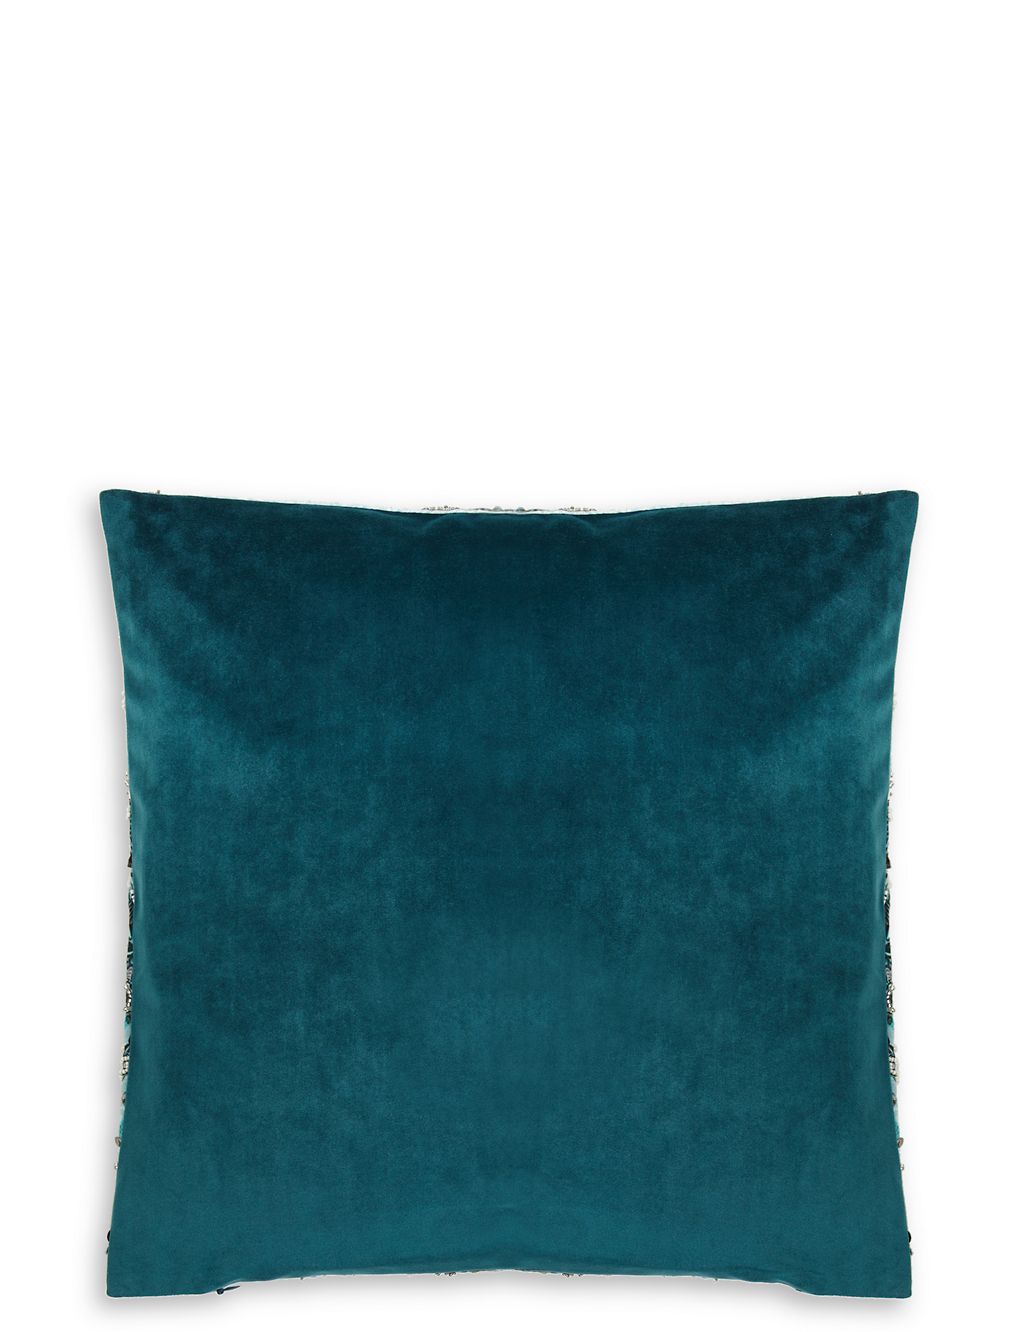 Embellished Cushion 2 of 2